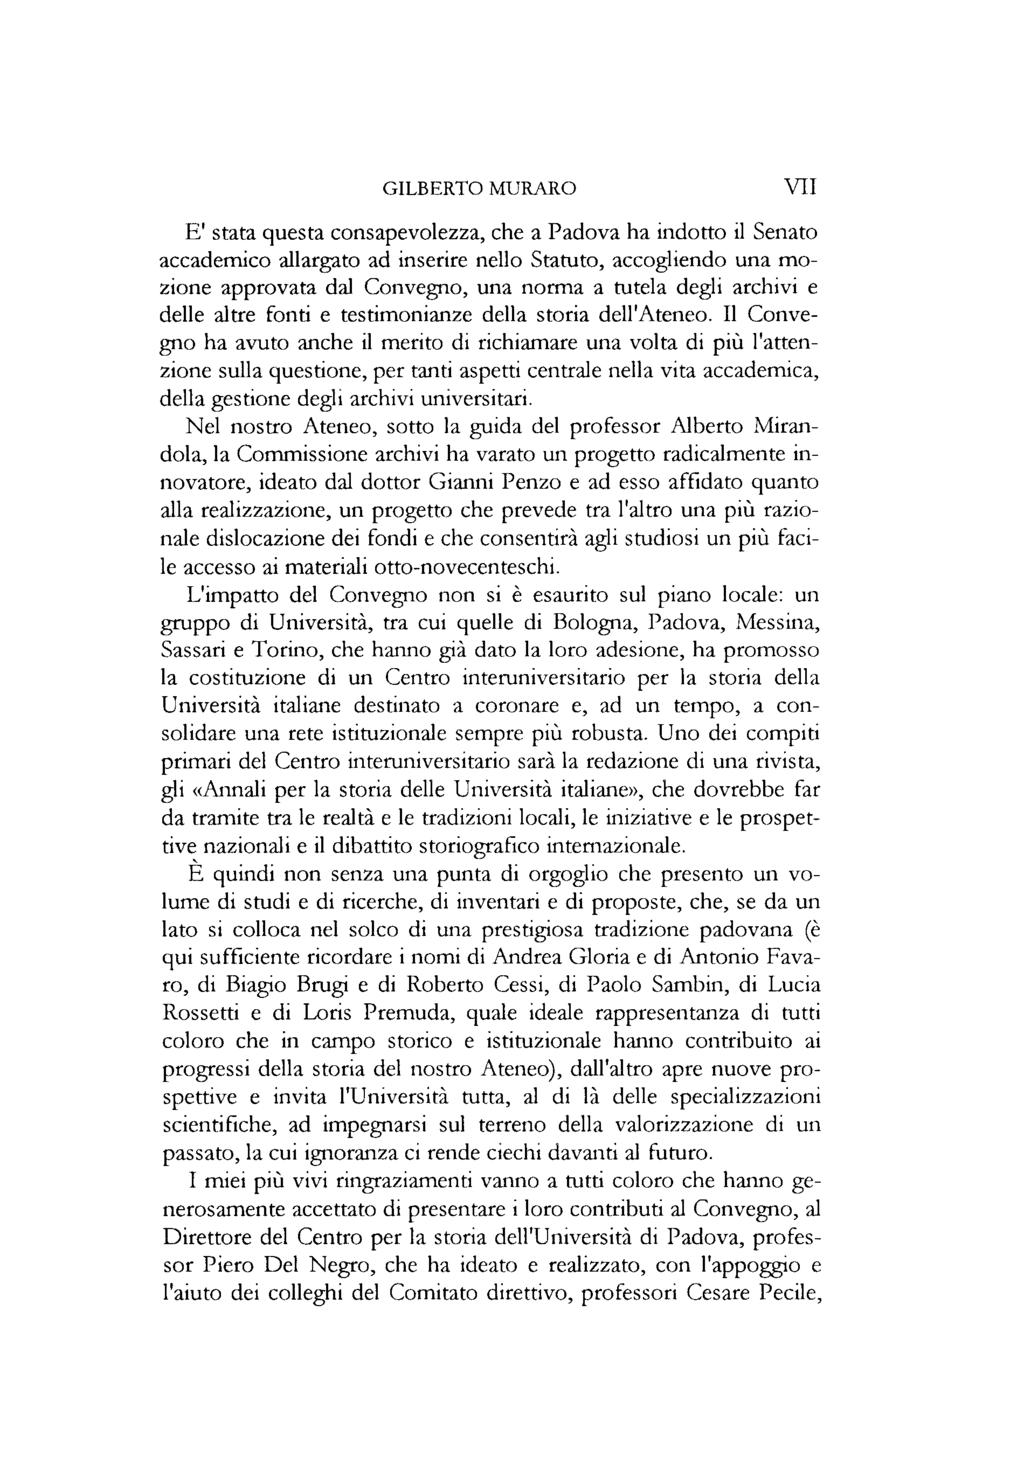 GILBERTO MURARO VII E' stata questa consapevolezza, che a Padova ha indotto il Senato accademico allargato ad inserire nello Statuto, accogliendo una mozione approvata dal Convegno, una norma a